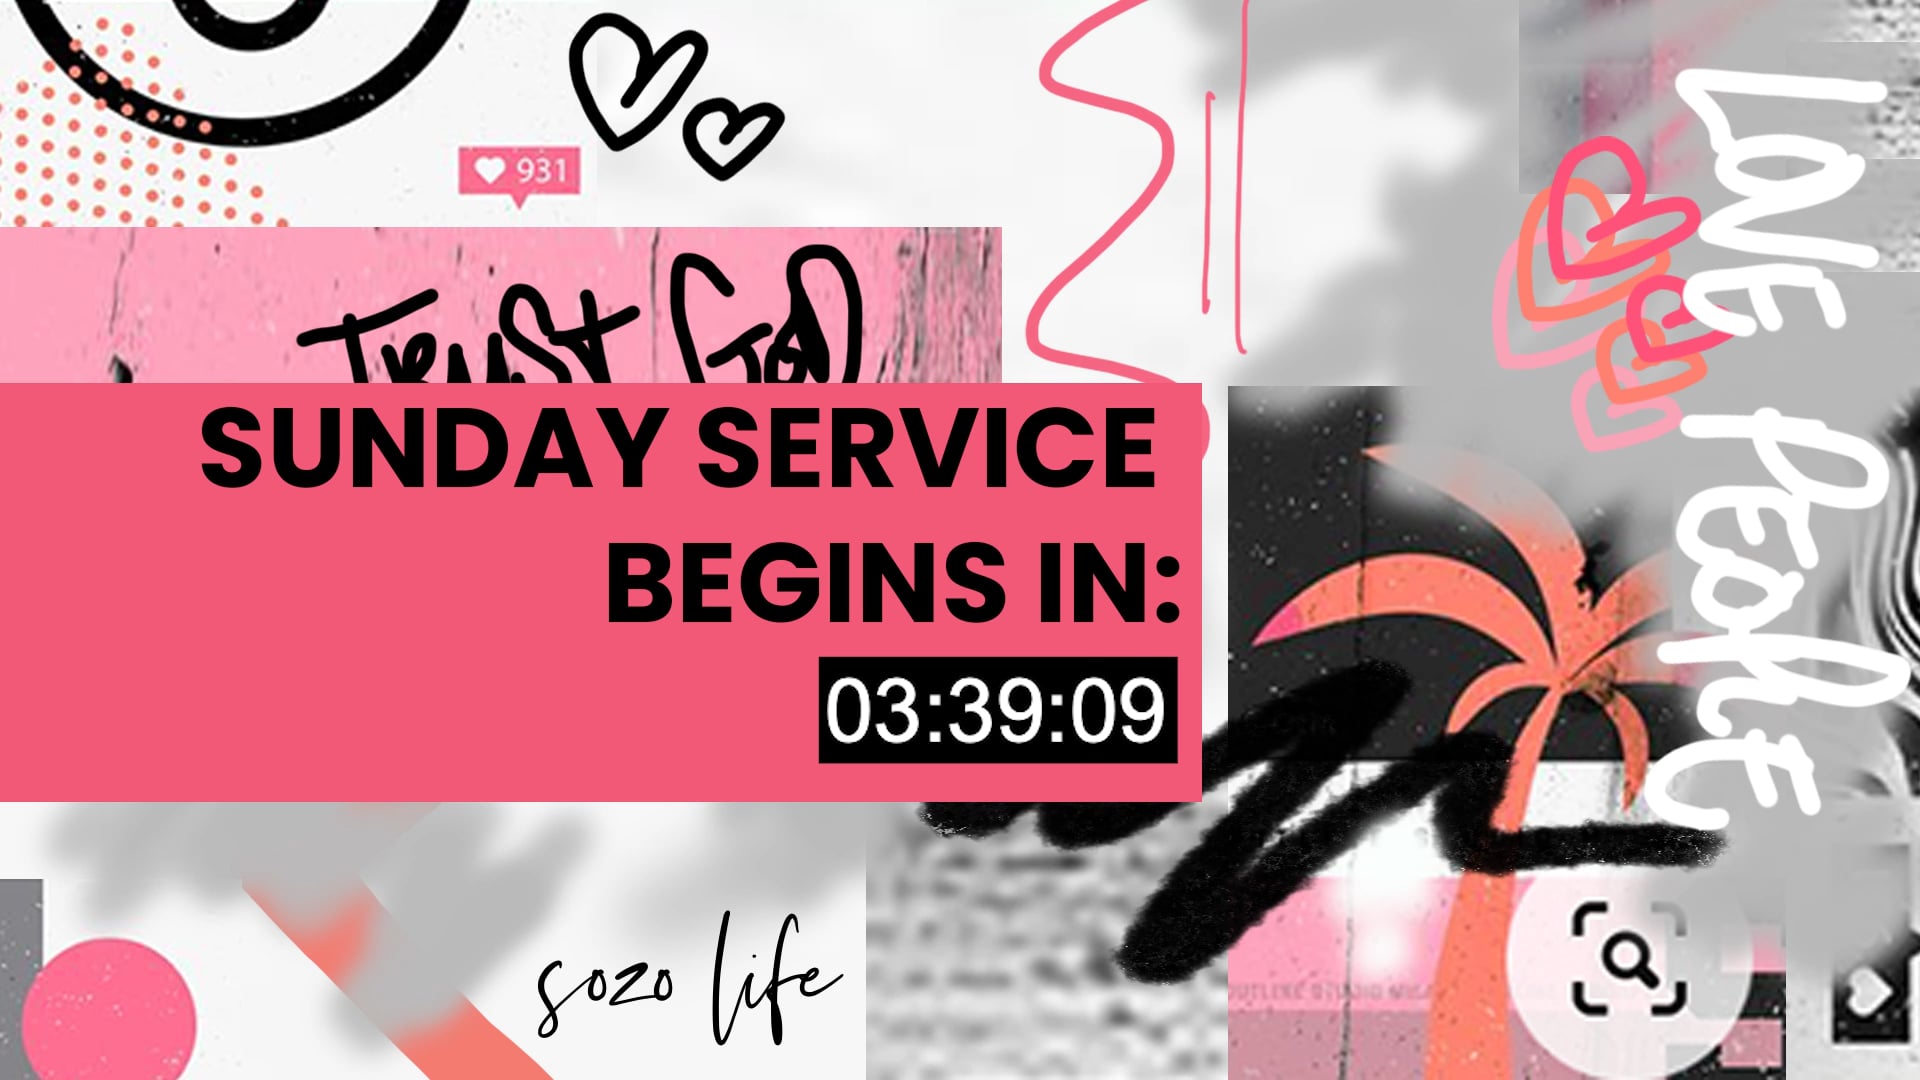 SOZO LIFE - Sunday Service 27.06.2021